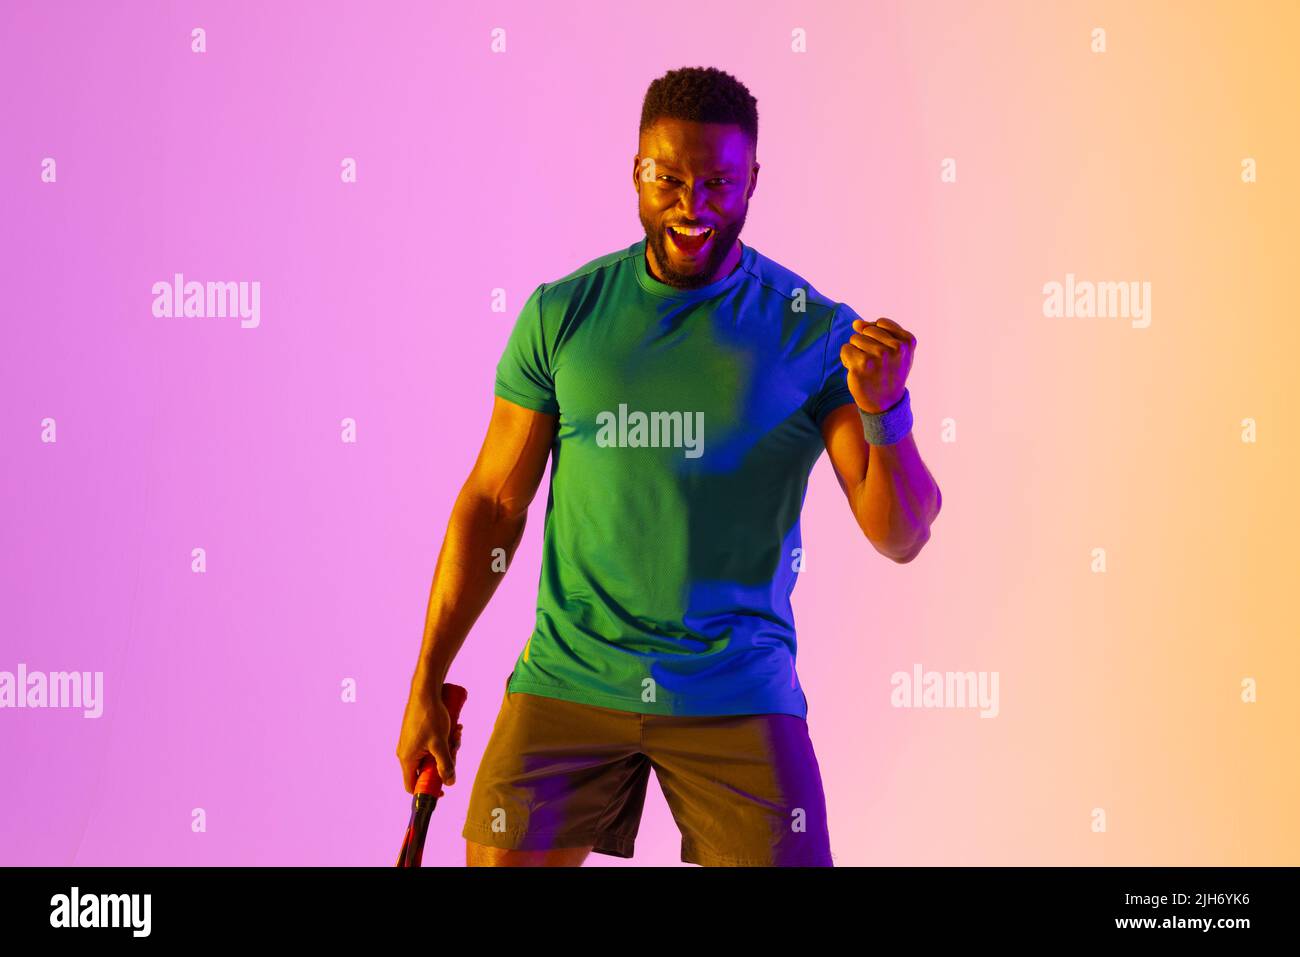 Image d'un joueur de tennis afro-américain réussi dans un éclairage violet et jaune Banque D'Images